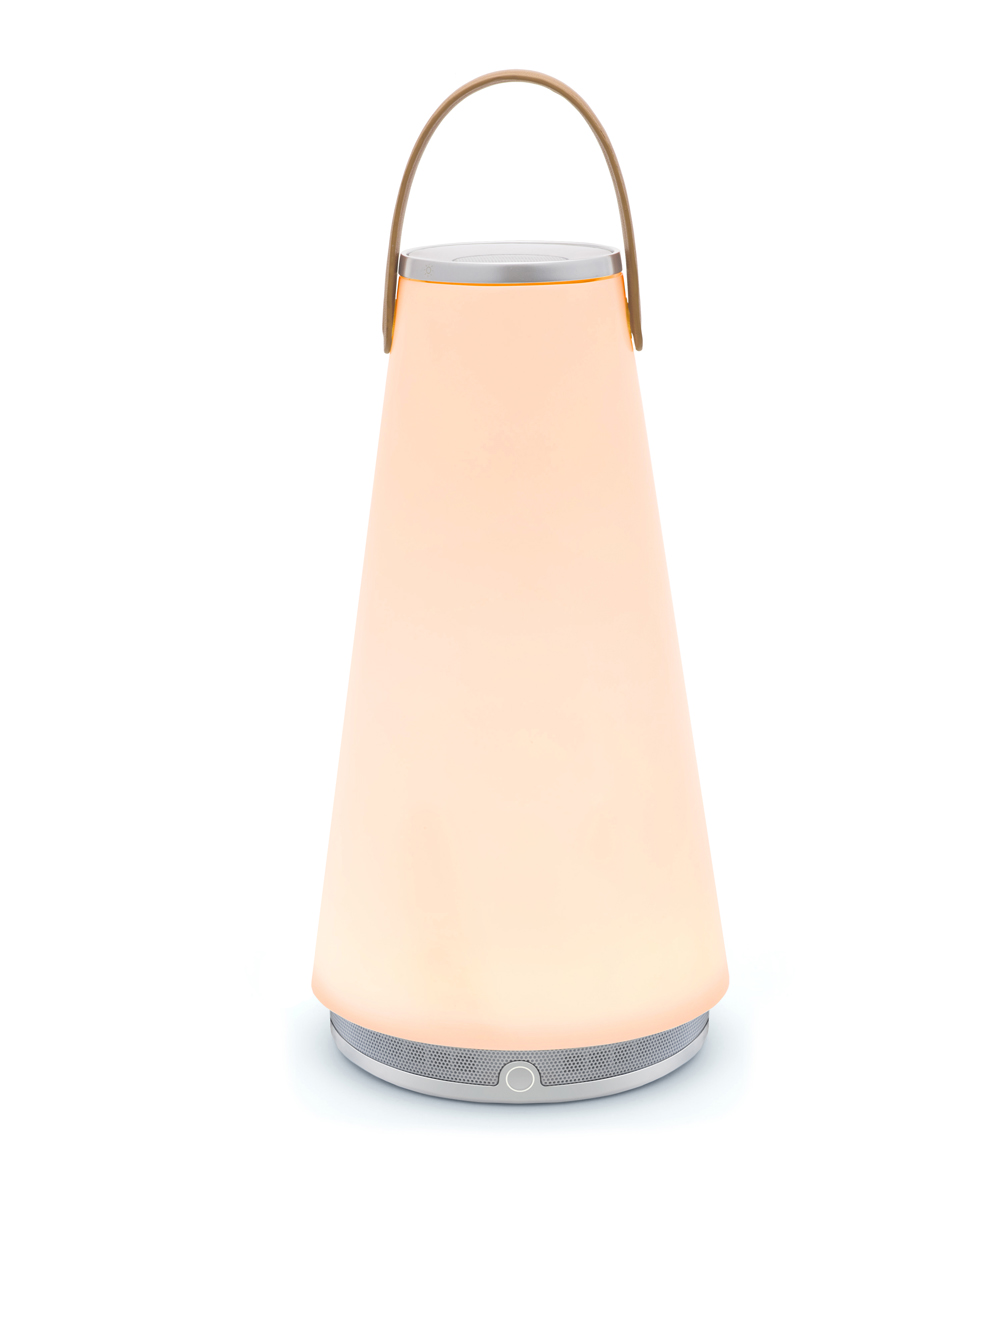 UMA, luz y sonido en la lámpara portátil de Pablo Designs